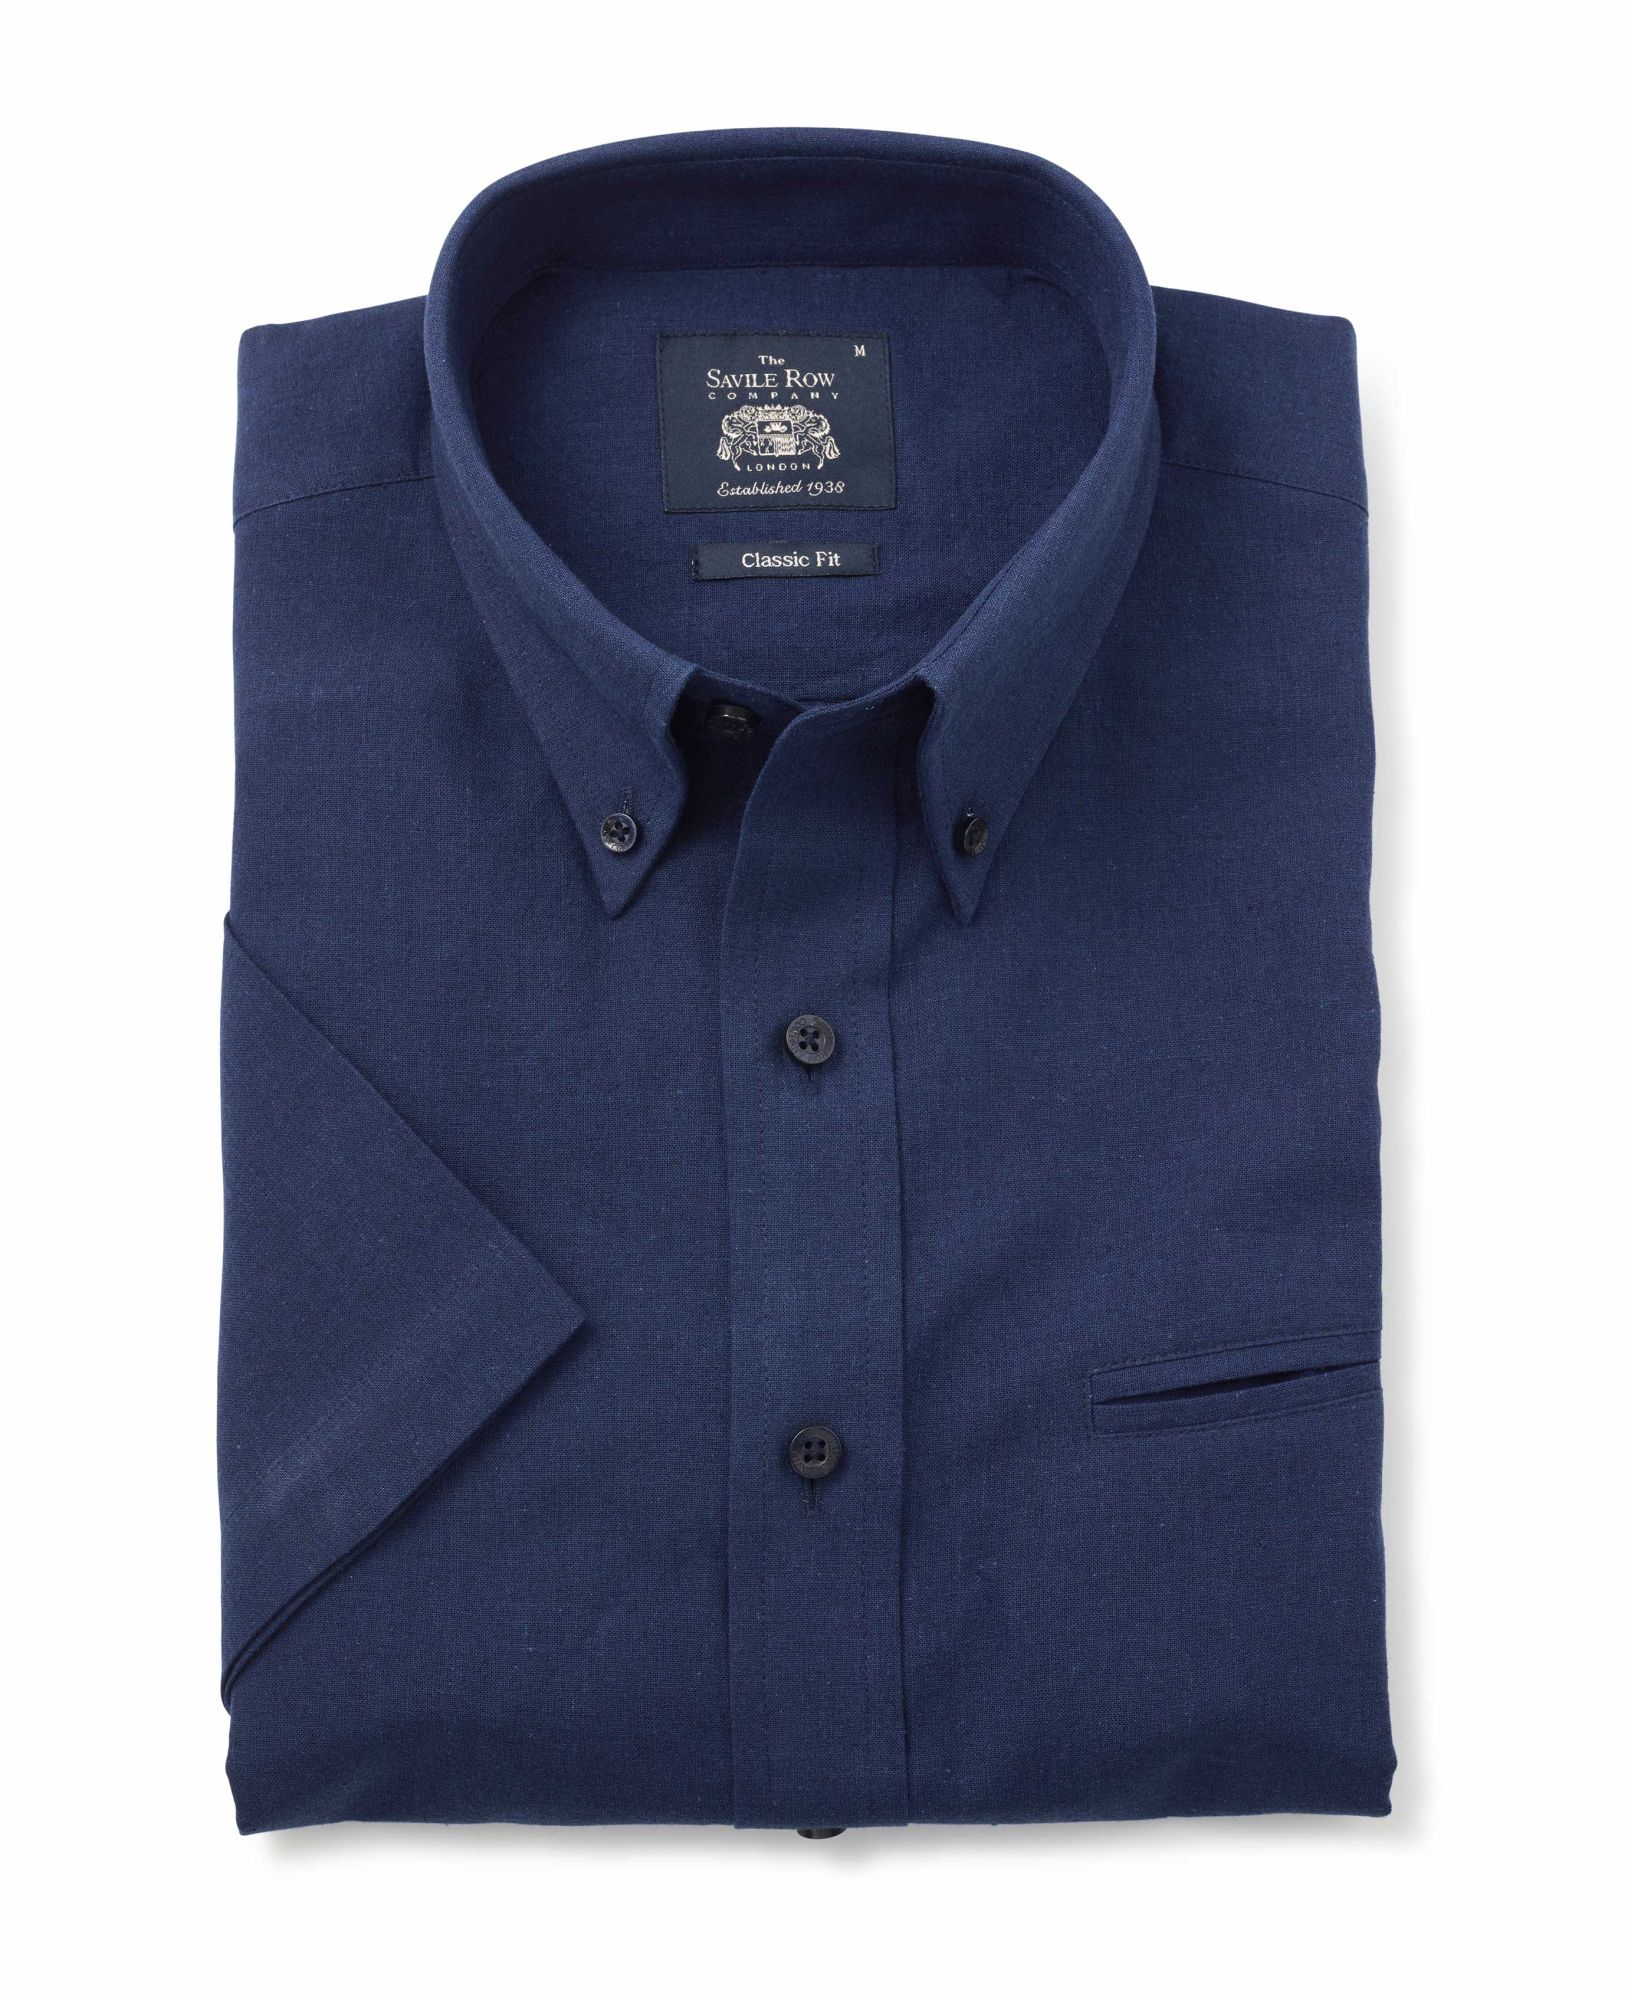 Navy Linen-Blend Classic Fit Short Sleeve Shirt XL